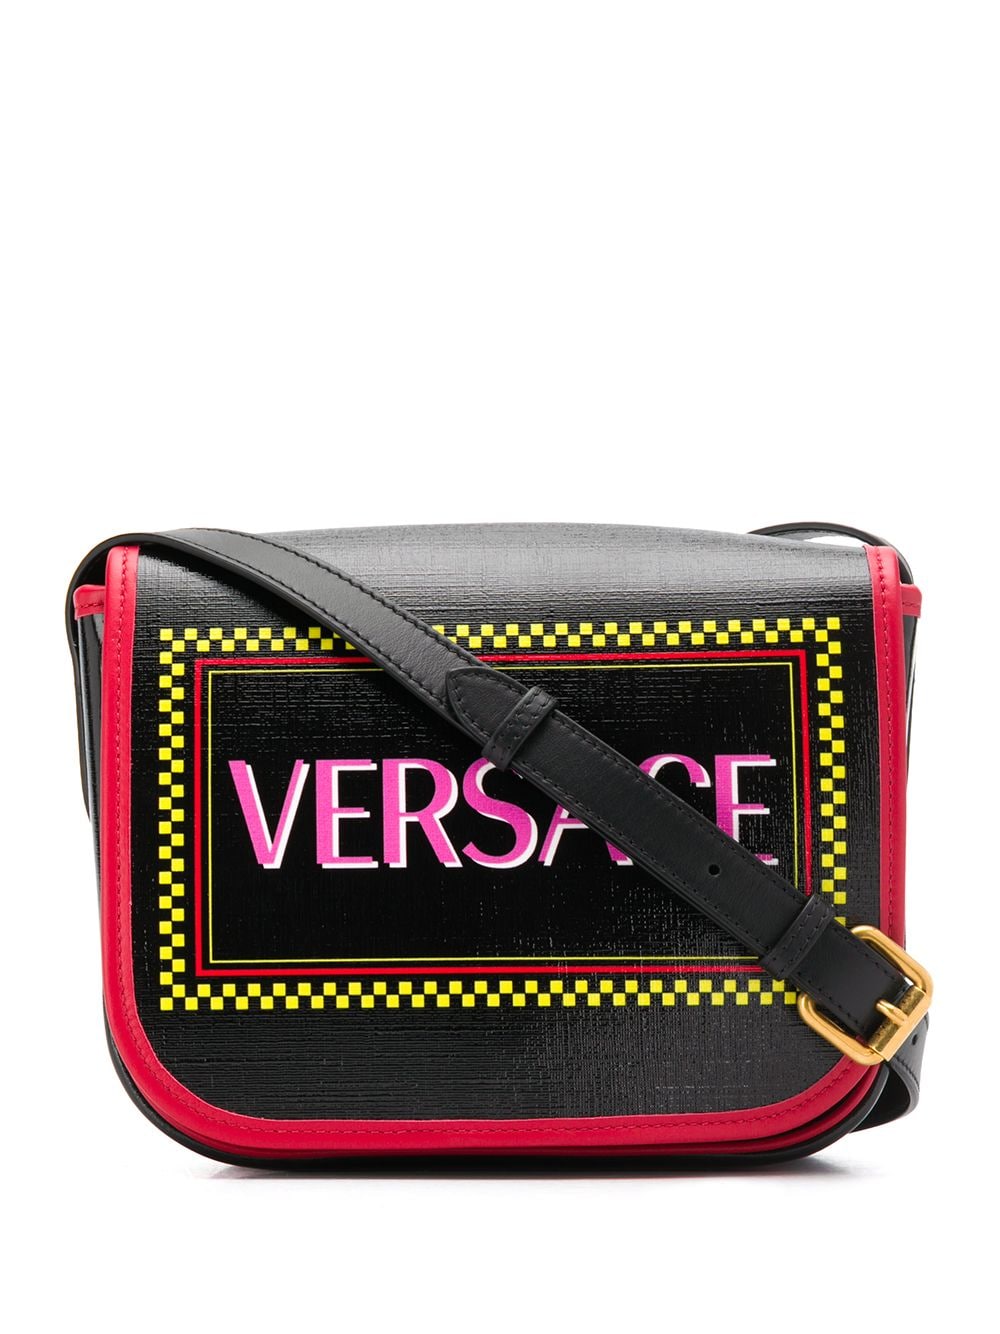 фото Versace сумка на плечо с архивным логотипом 1990-х годов